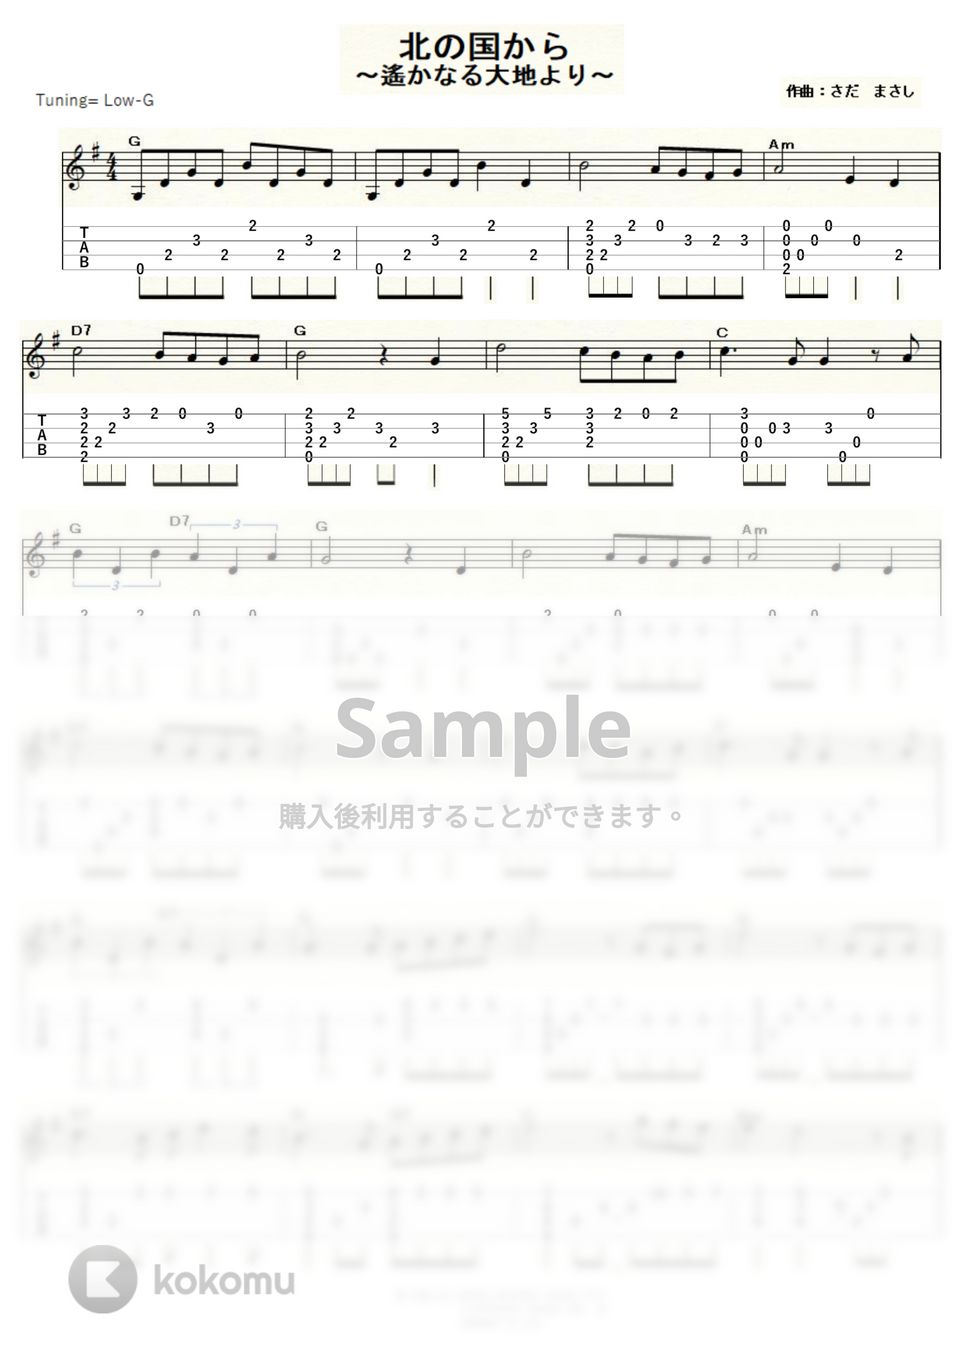 さだ まさし - 北の国から－遙かなる大地より－ (ｳｸﾚﾚｿﾛ / Low-G / 中級) by ukulelepapa